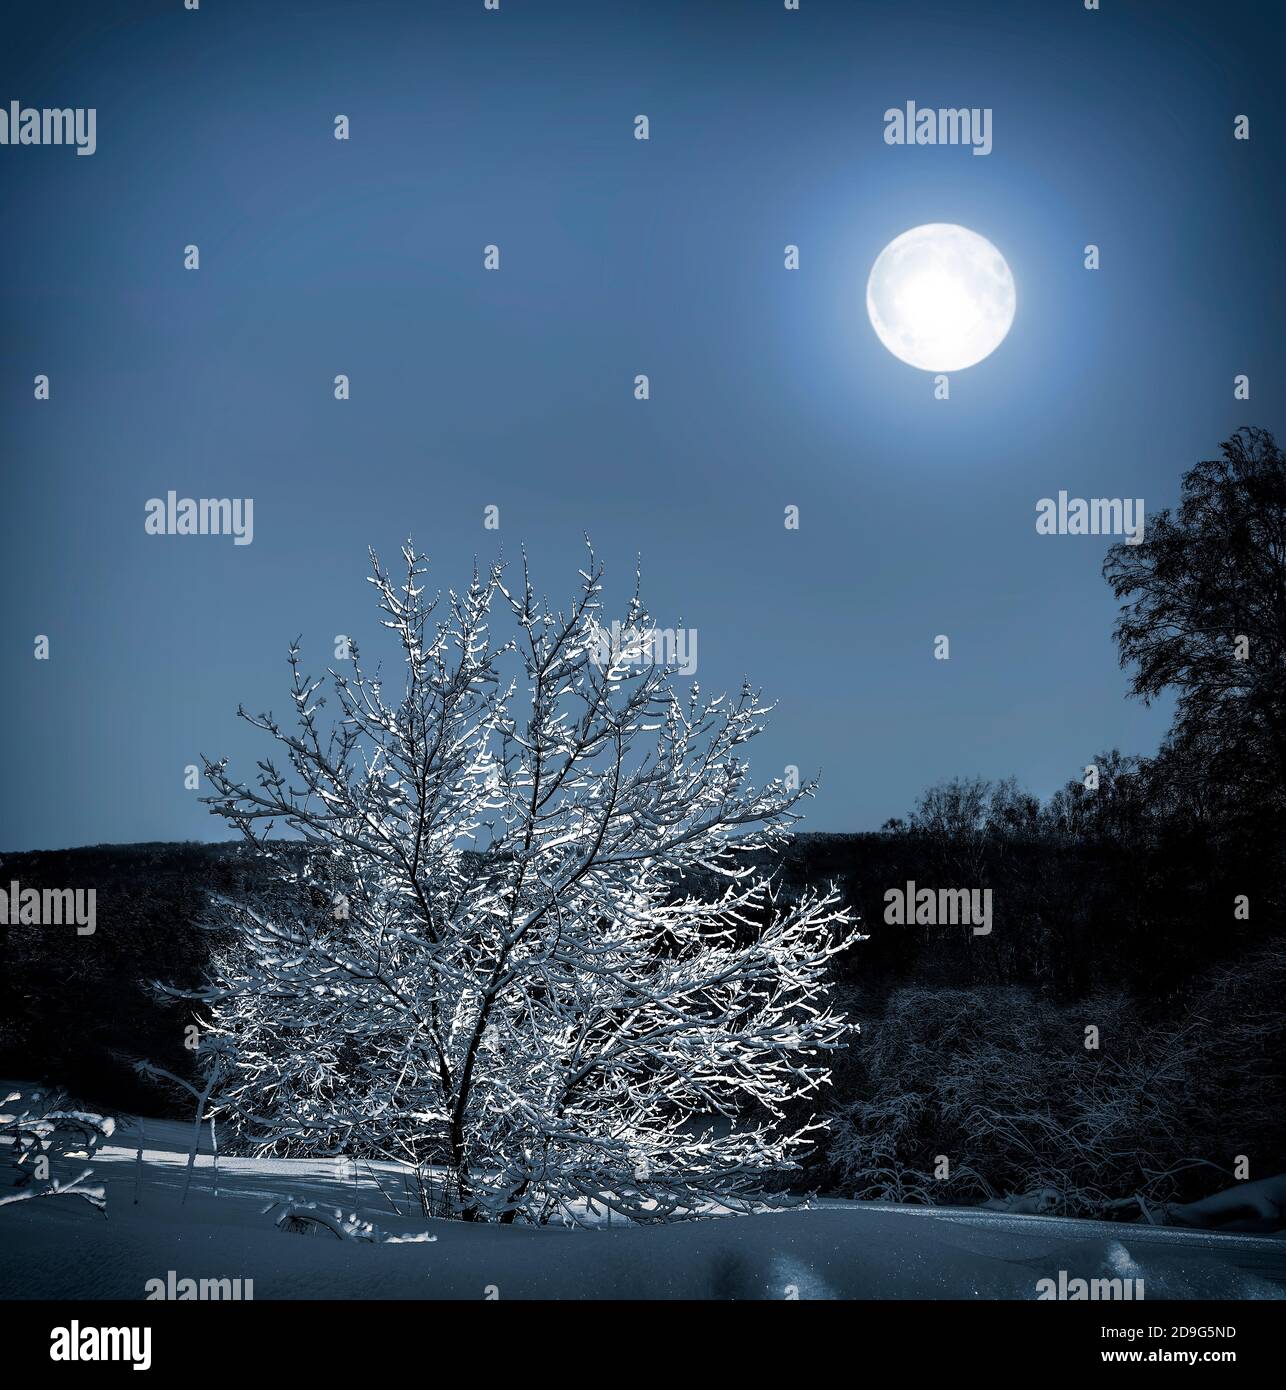 Einsamer Baum mit Schnee bedeckt im Mondlicht - wunderbare Winternachtslandschaft. Vollmond über dem Wald beleuchtet einsamen Baum auf der verschneiten Wiese Stockfoto